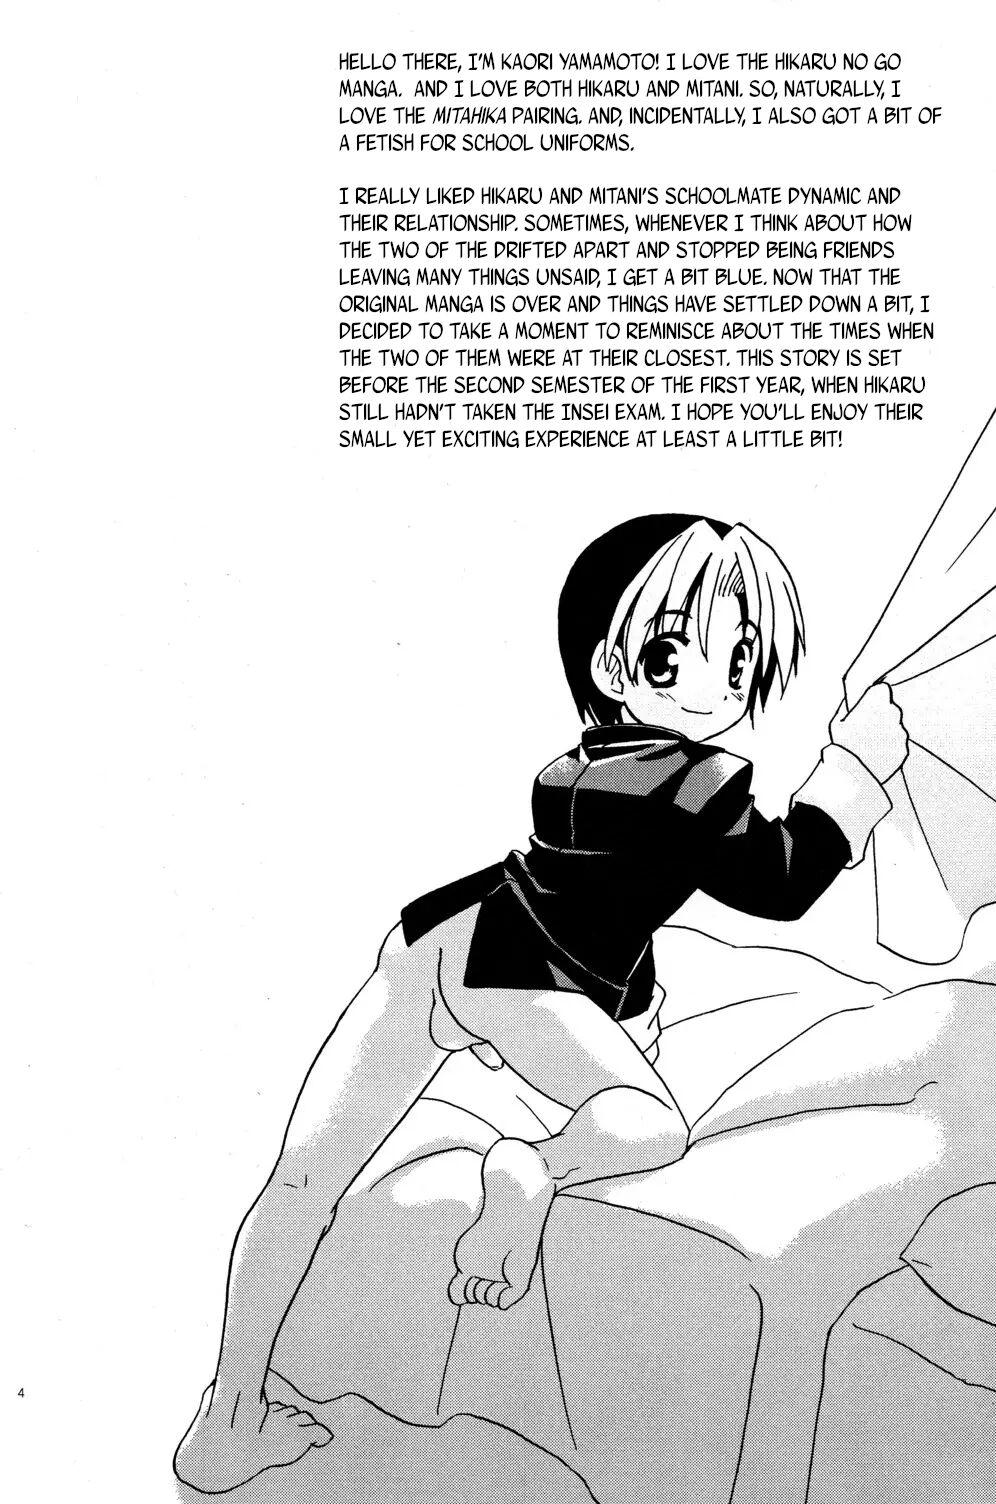 Lady Douki no Sakura - Hikaru no go Porno 18 - Page 4